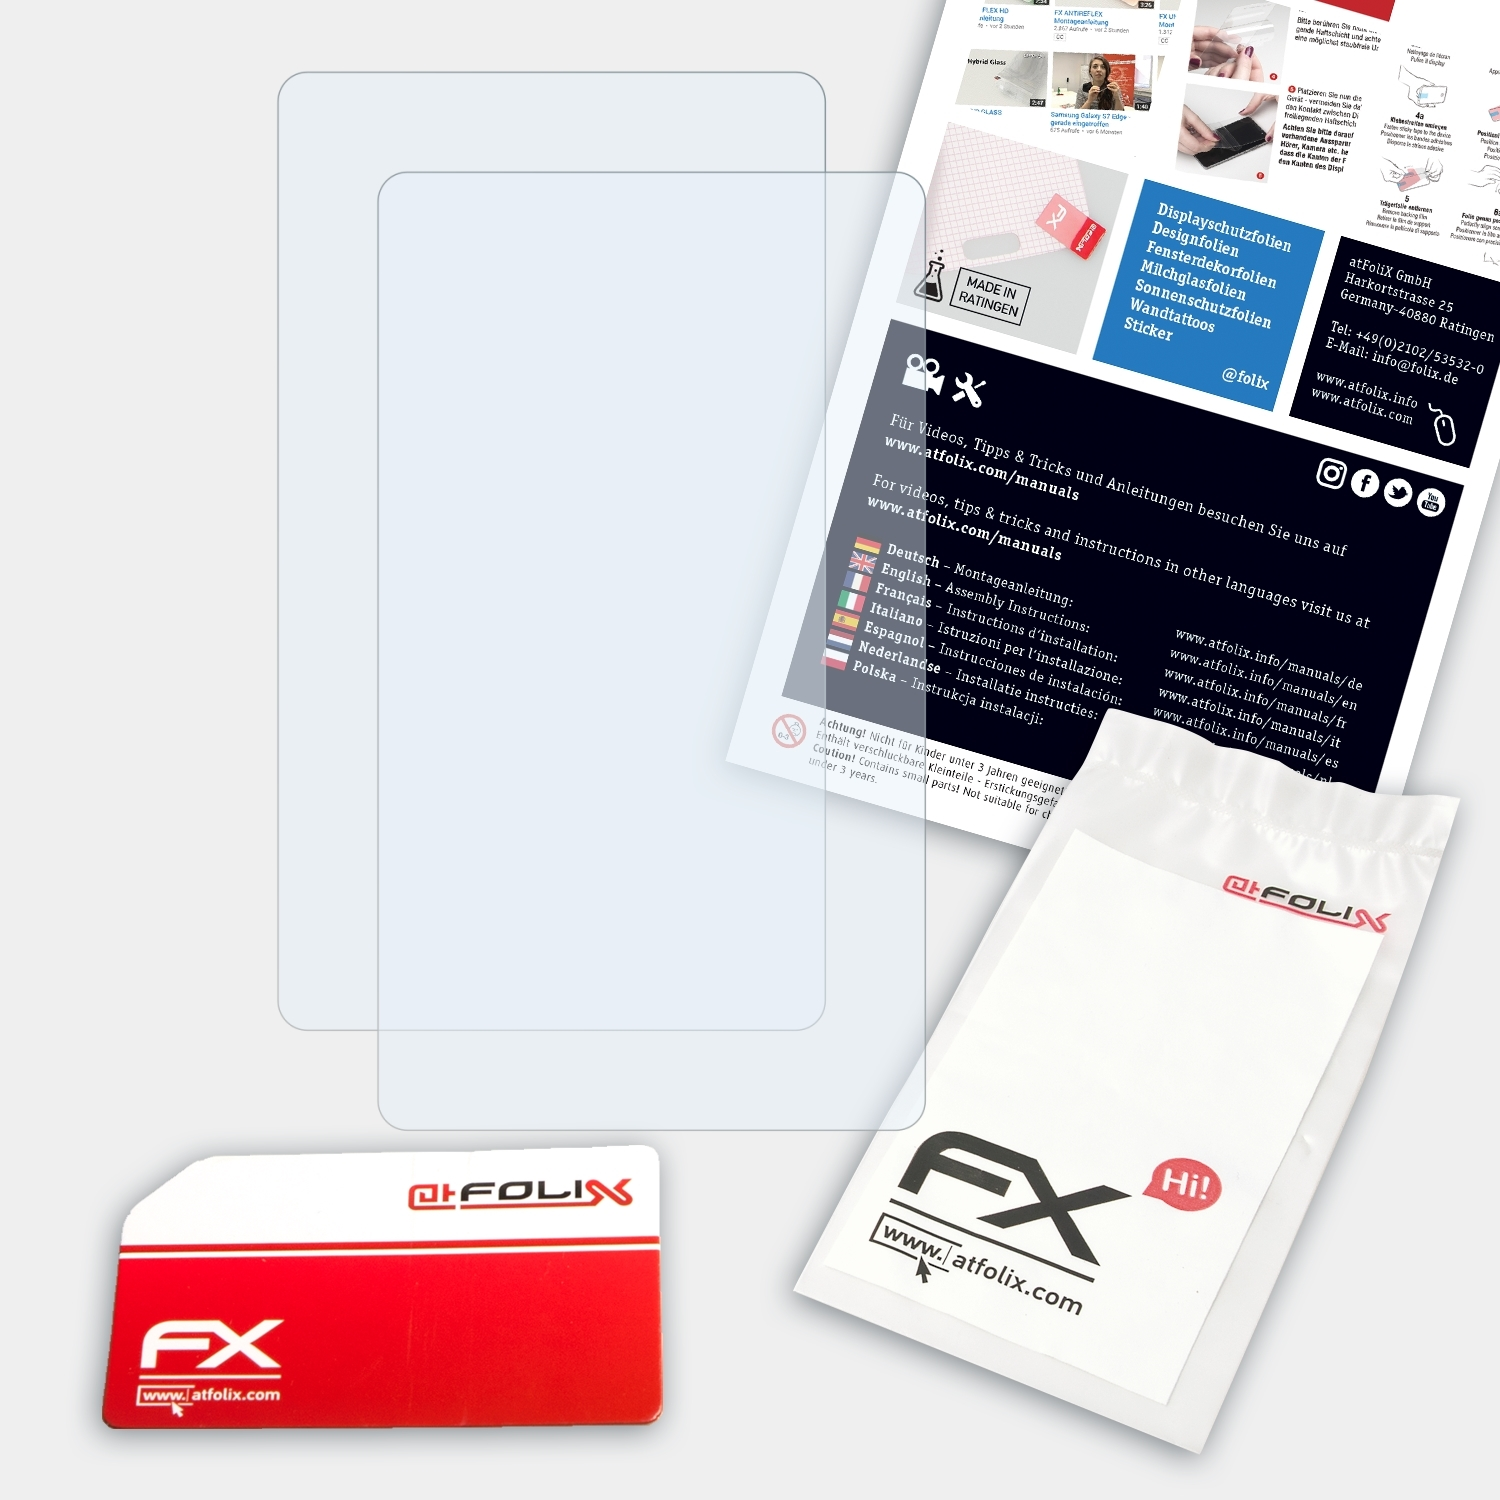 FX-Clear ATFOLIX 2x Displayschutz(für Casio FX-9860GIII)